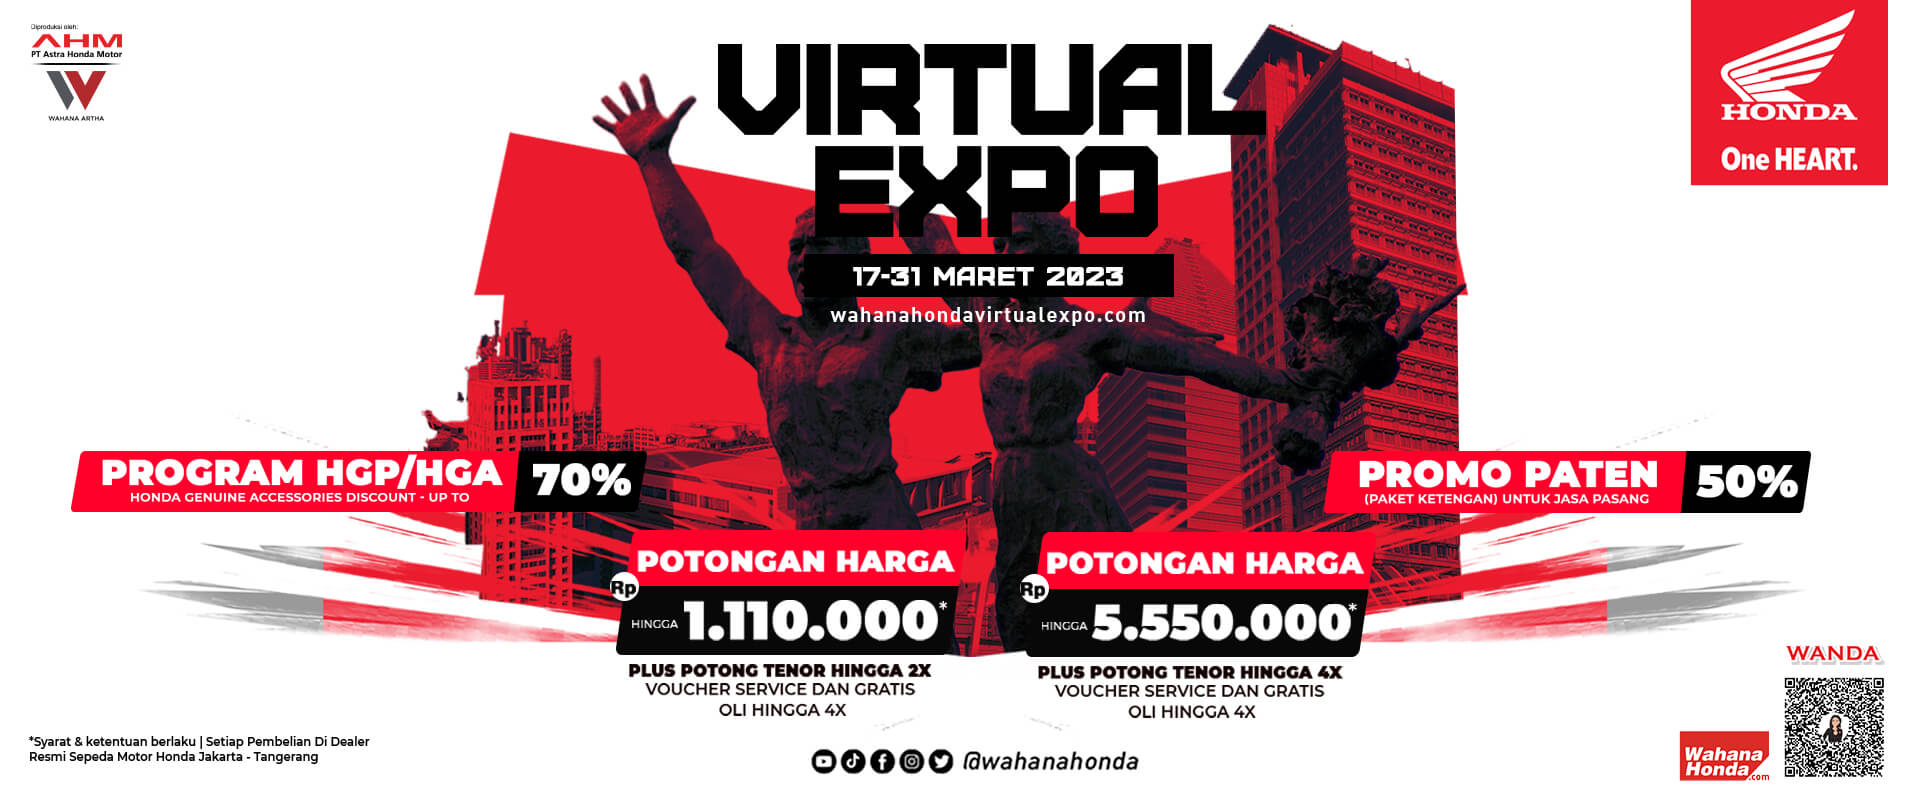 Wahana Honda Virtual Expo 17 - 31 Maret 2023